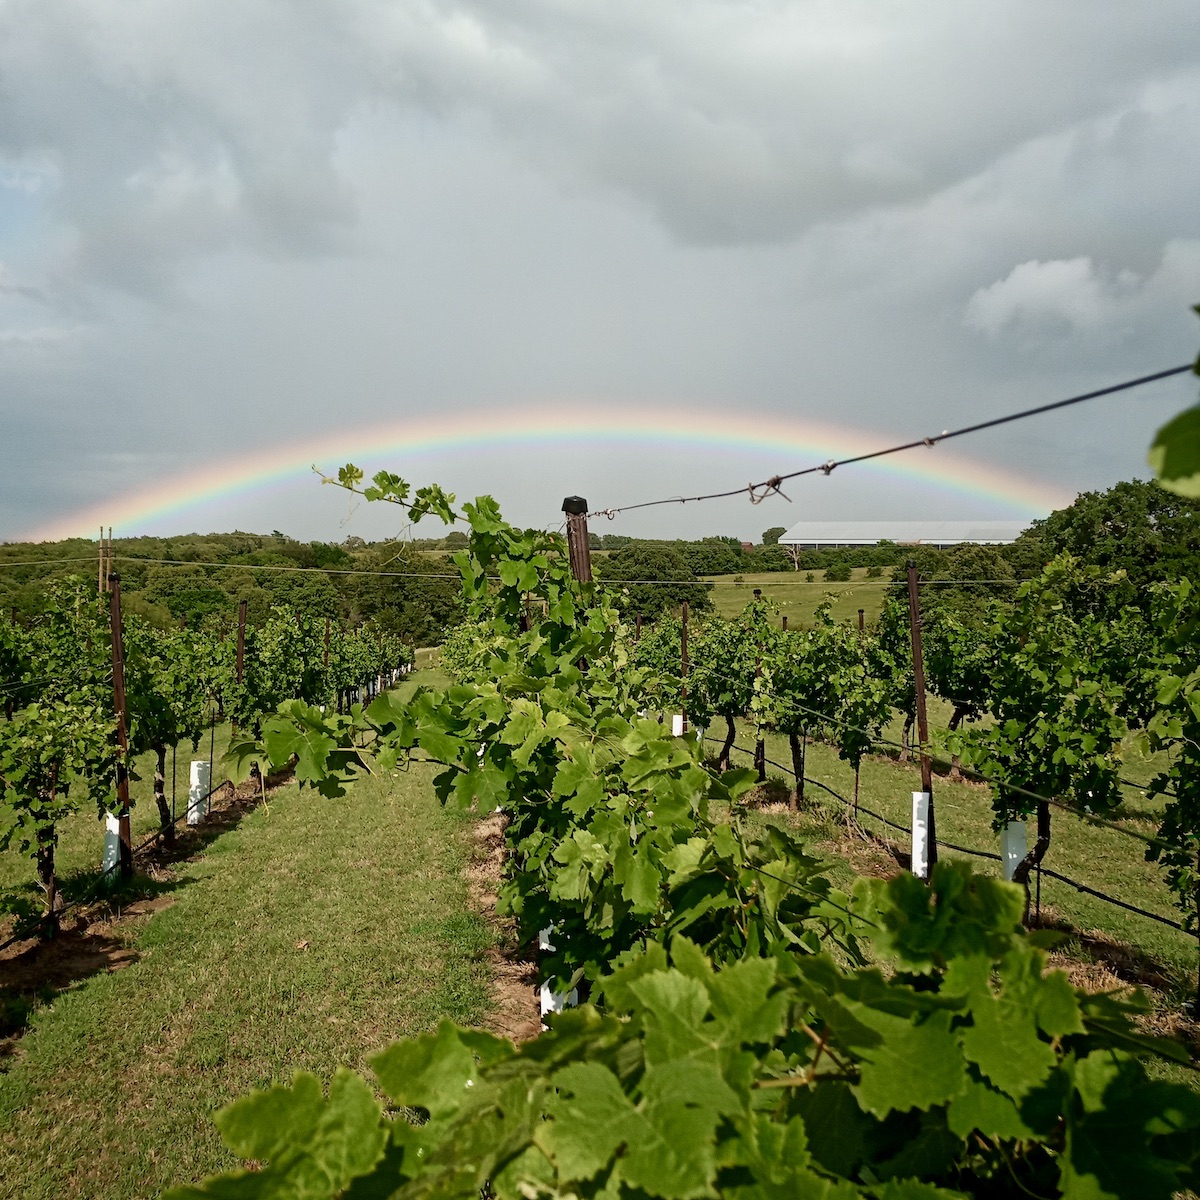 Arche Winery in Saint Jo, Texas